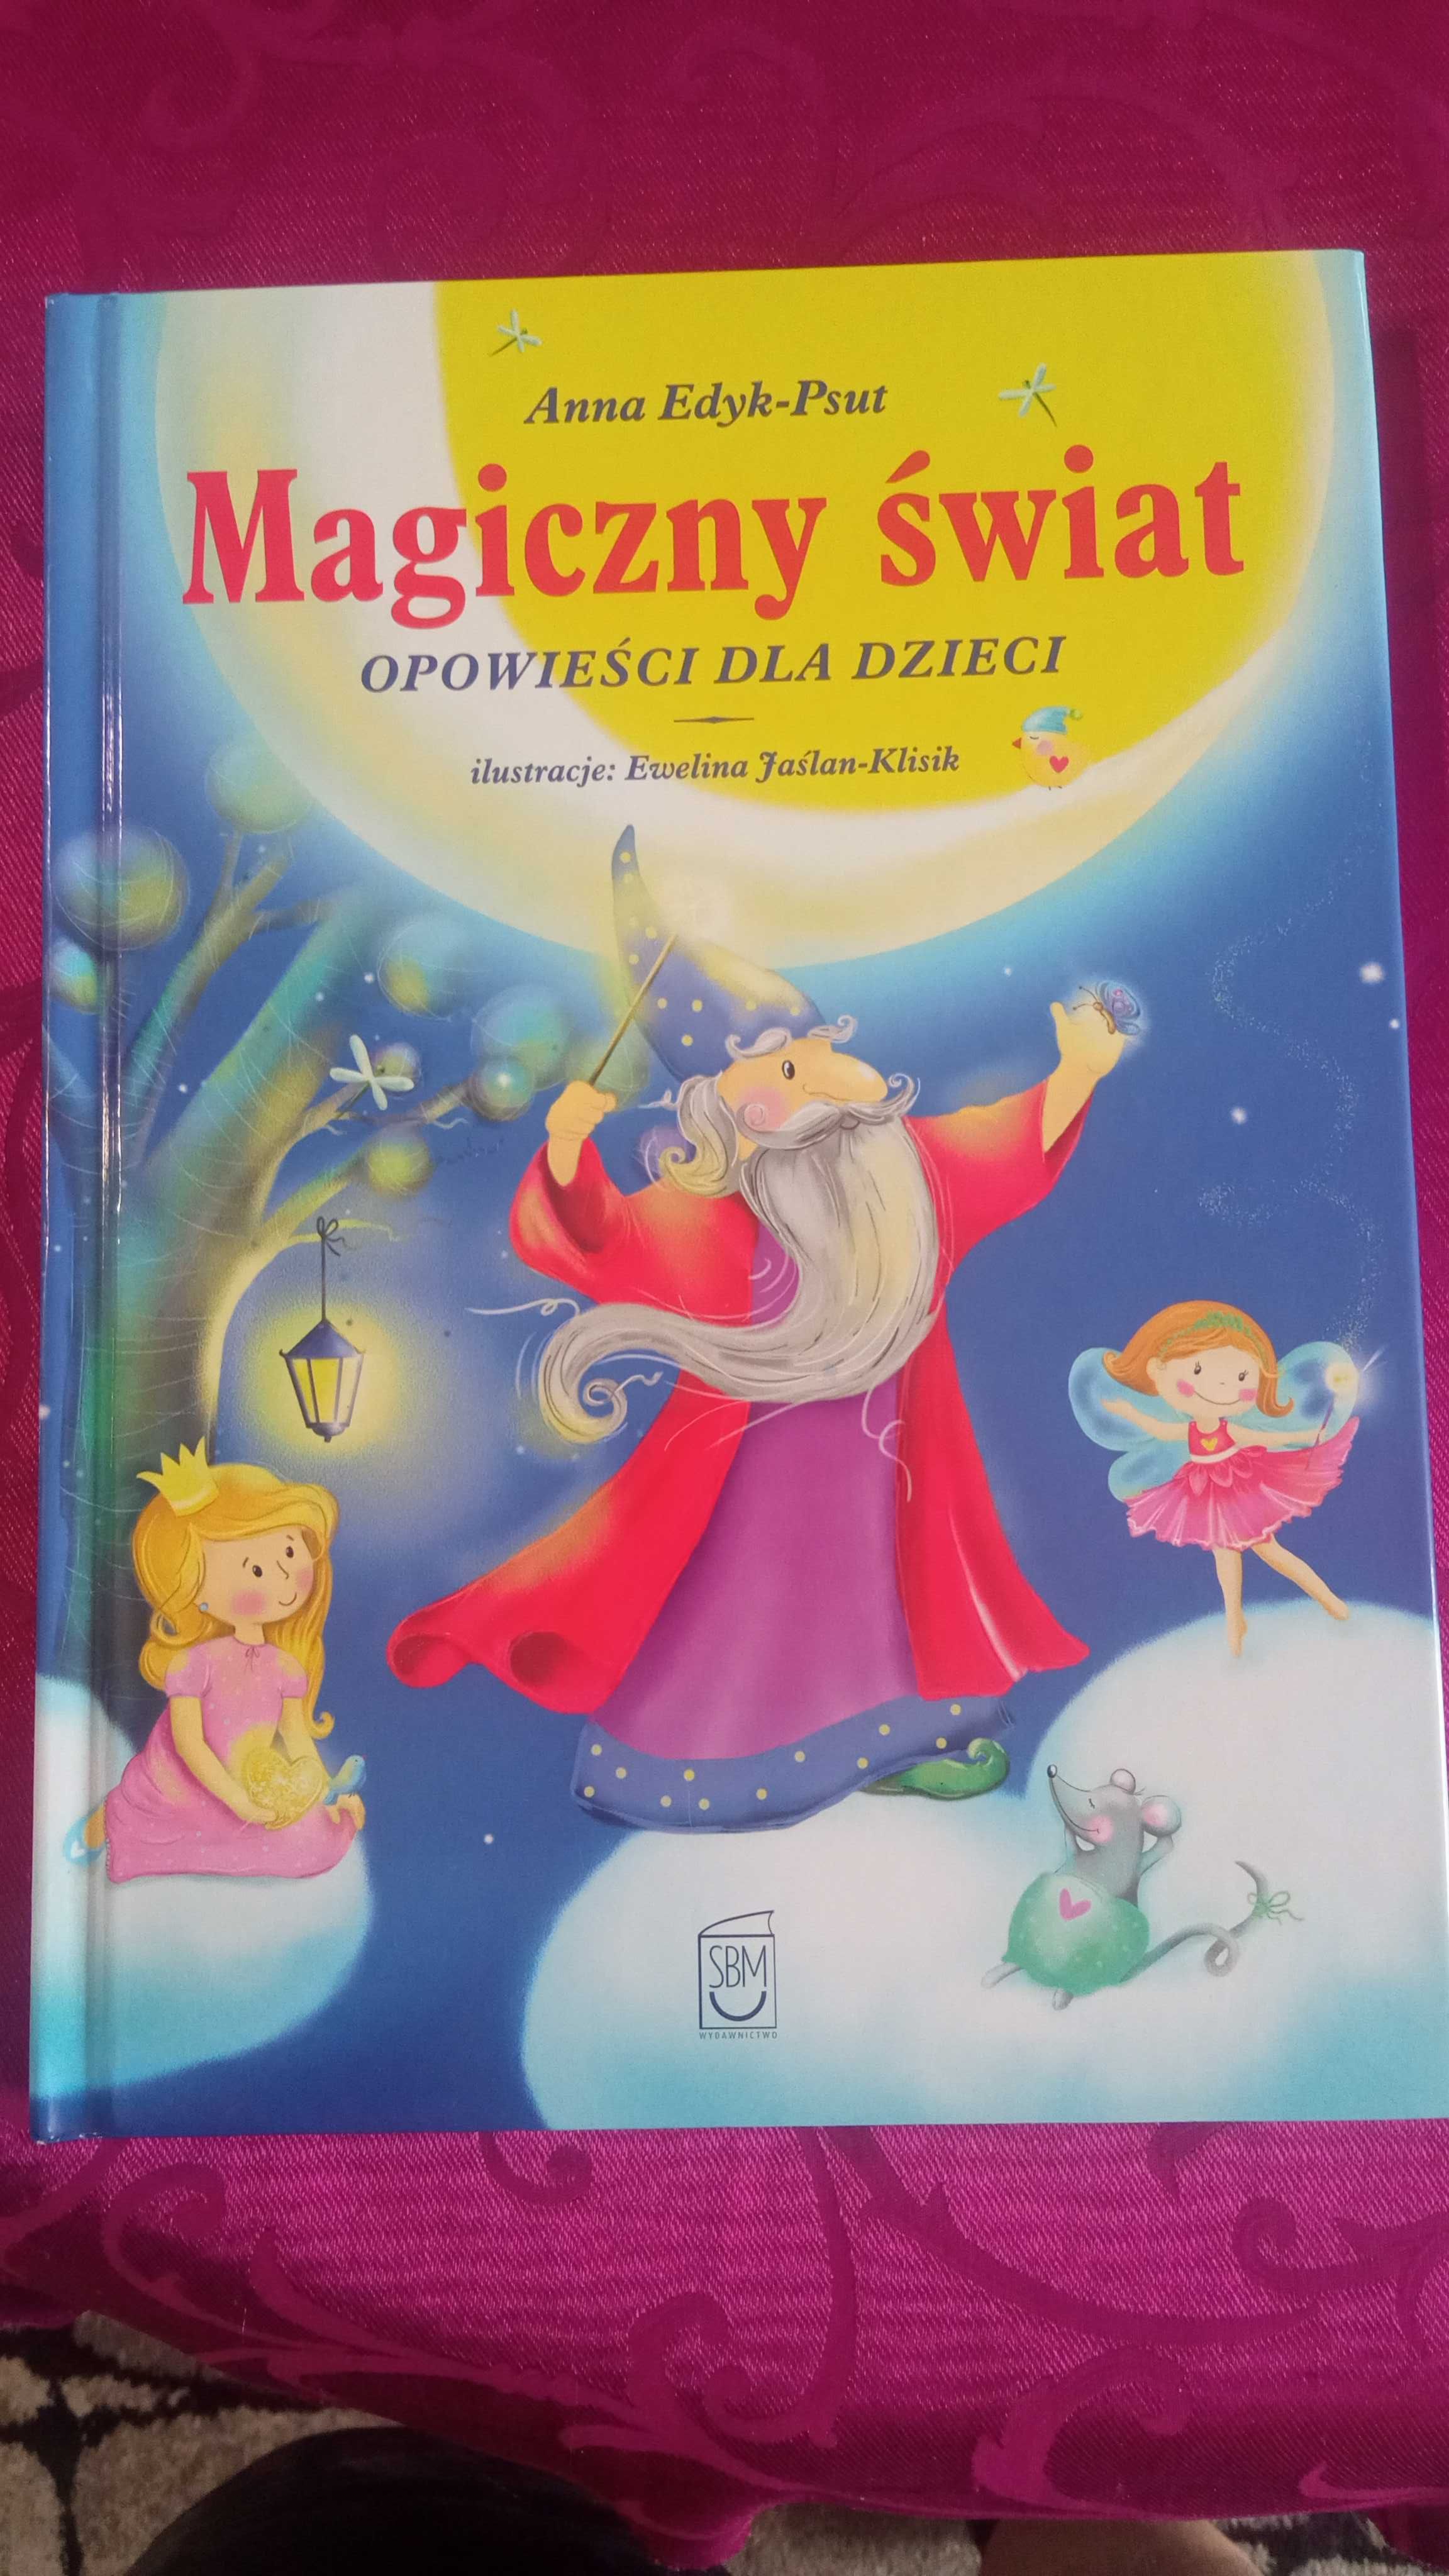 Magiczny świat - opowieści dla dzieci